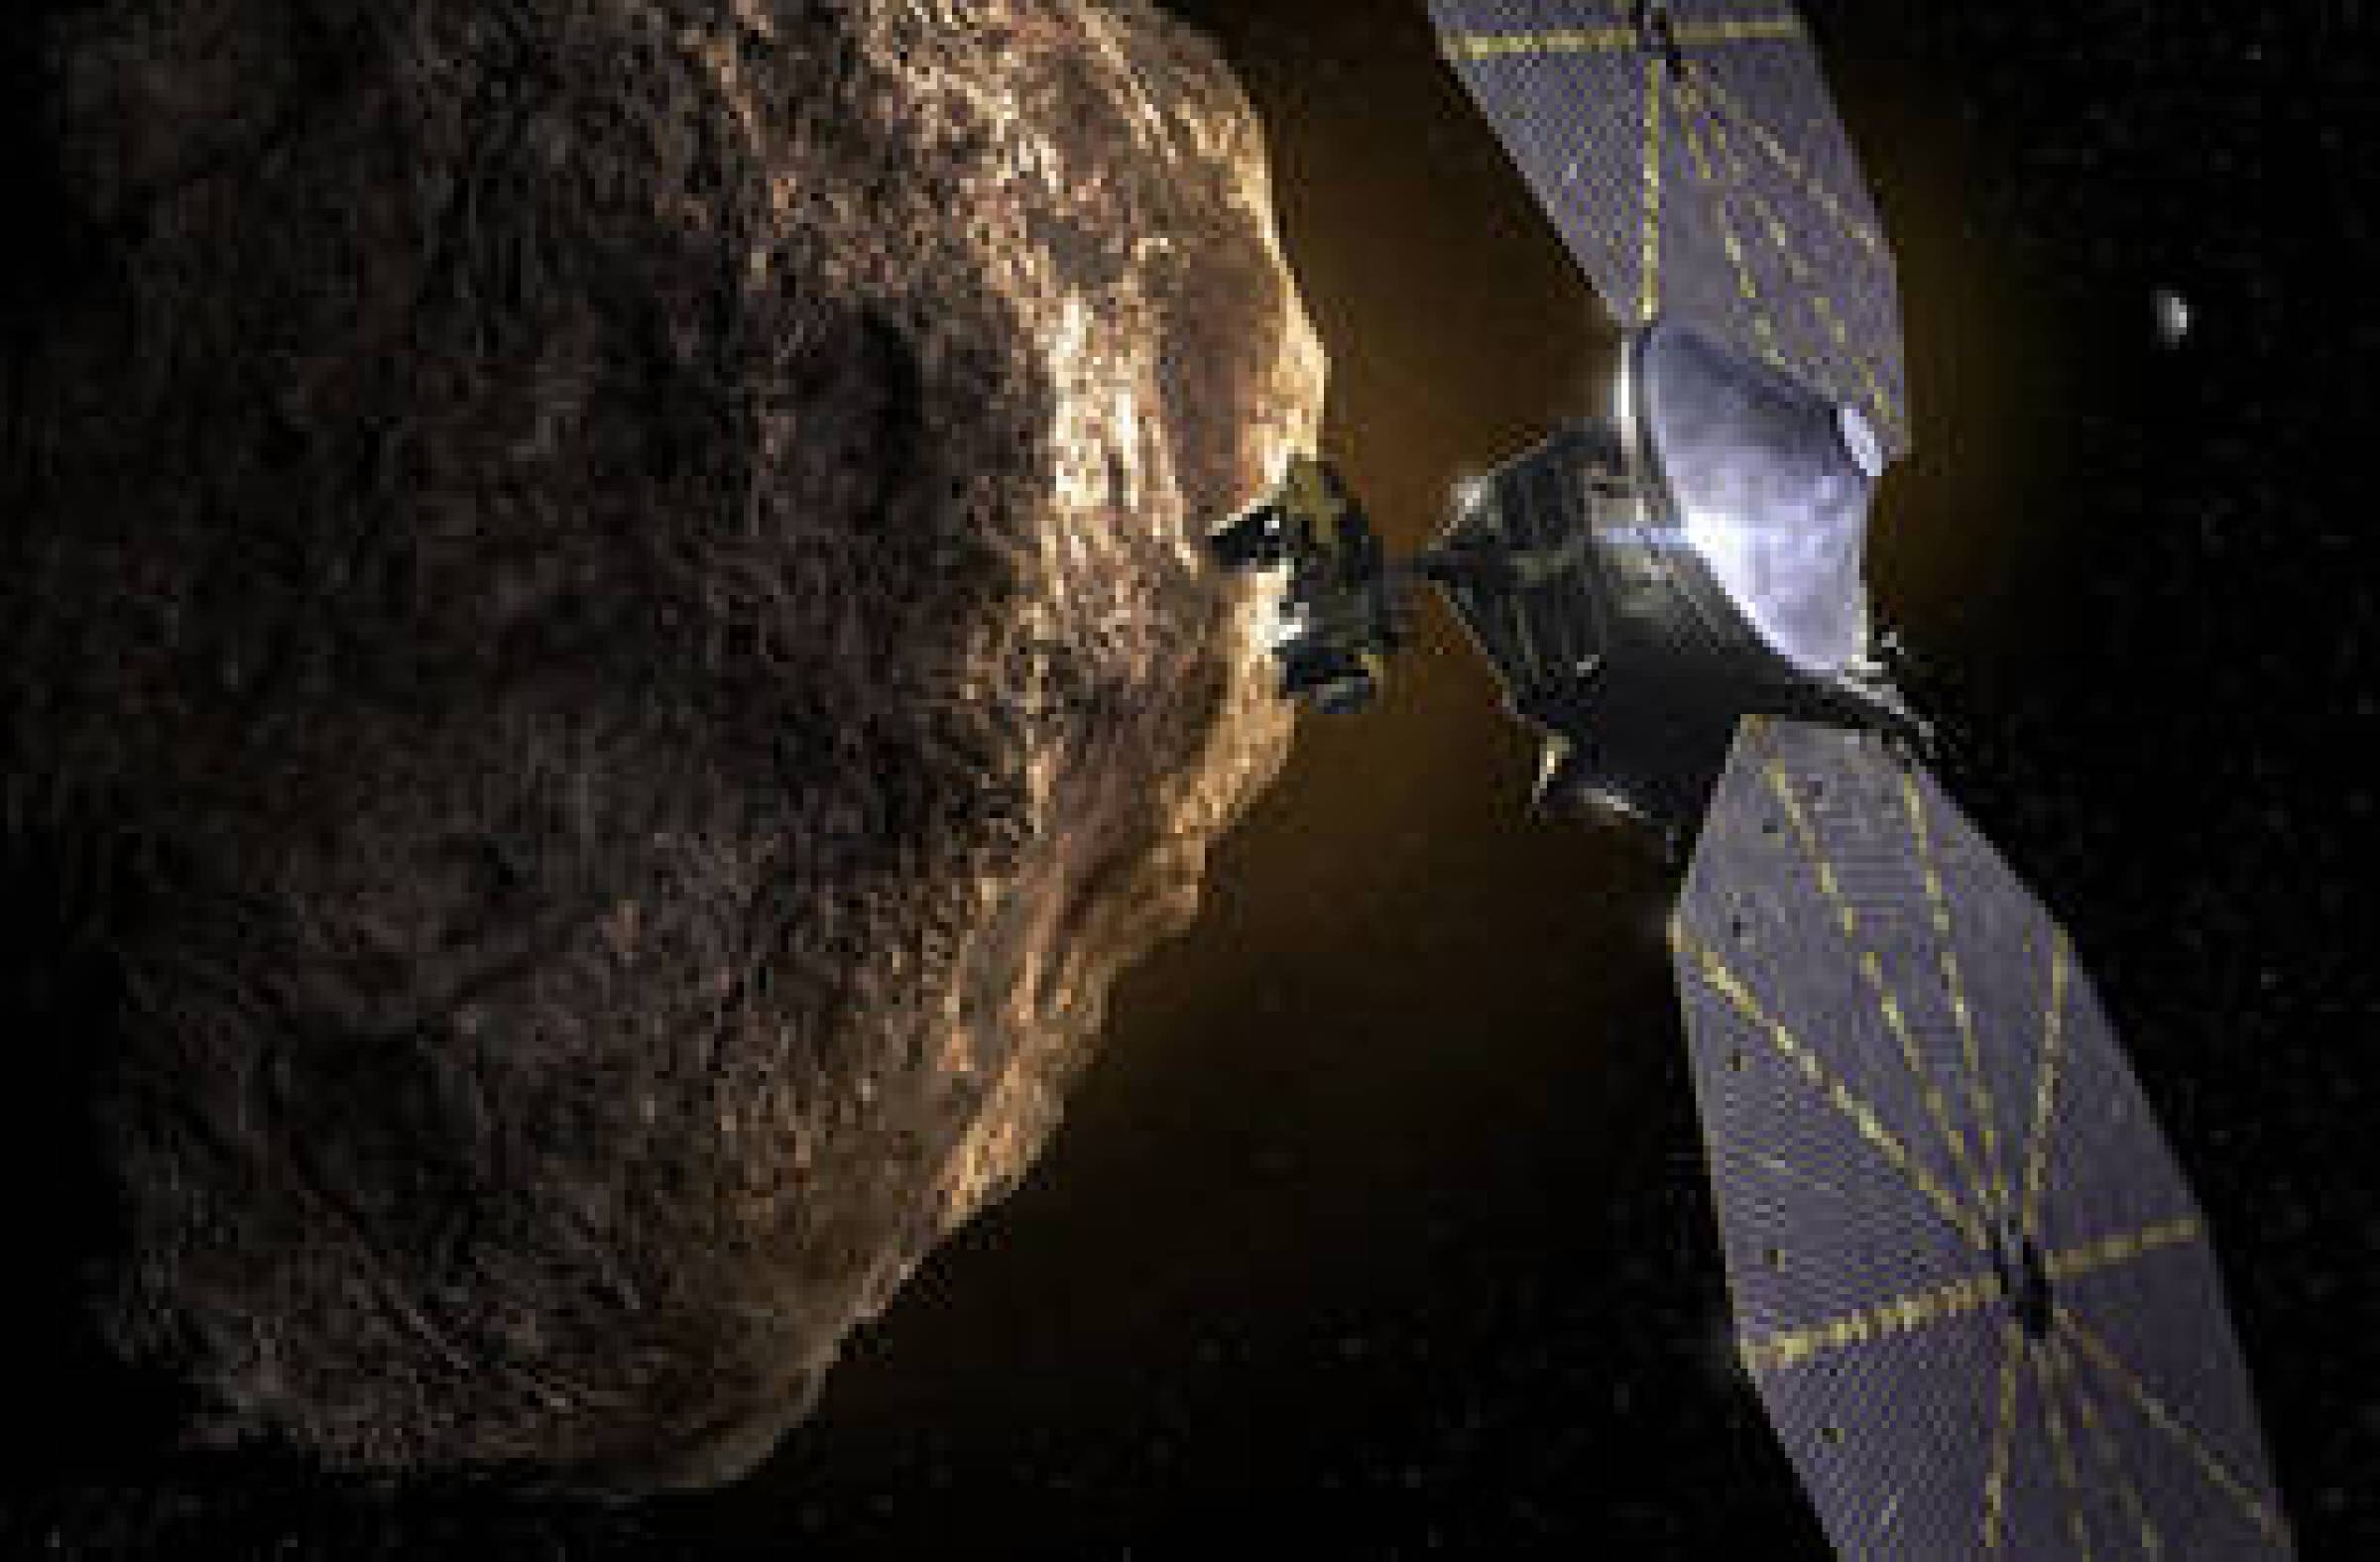 Le vaisseau spatial Lucy de la NASA se prépare à passer par la Terre